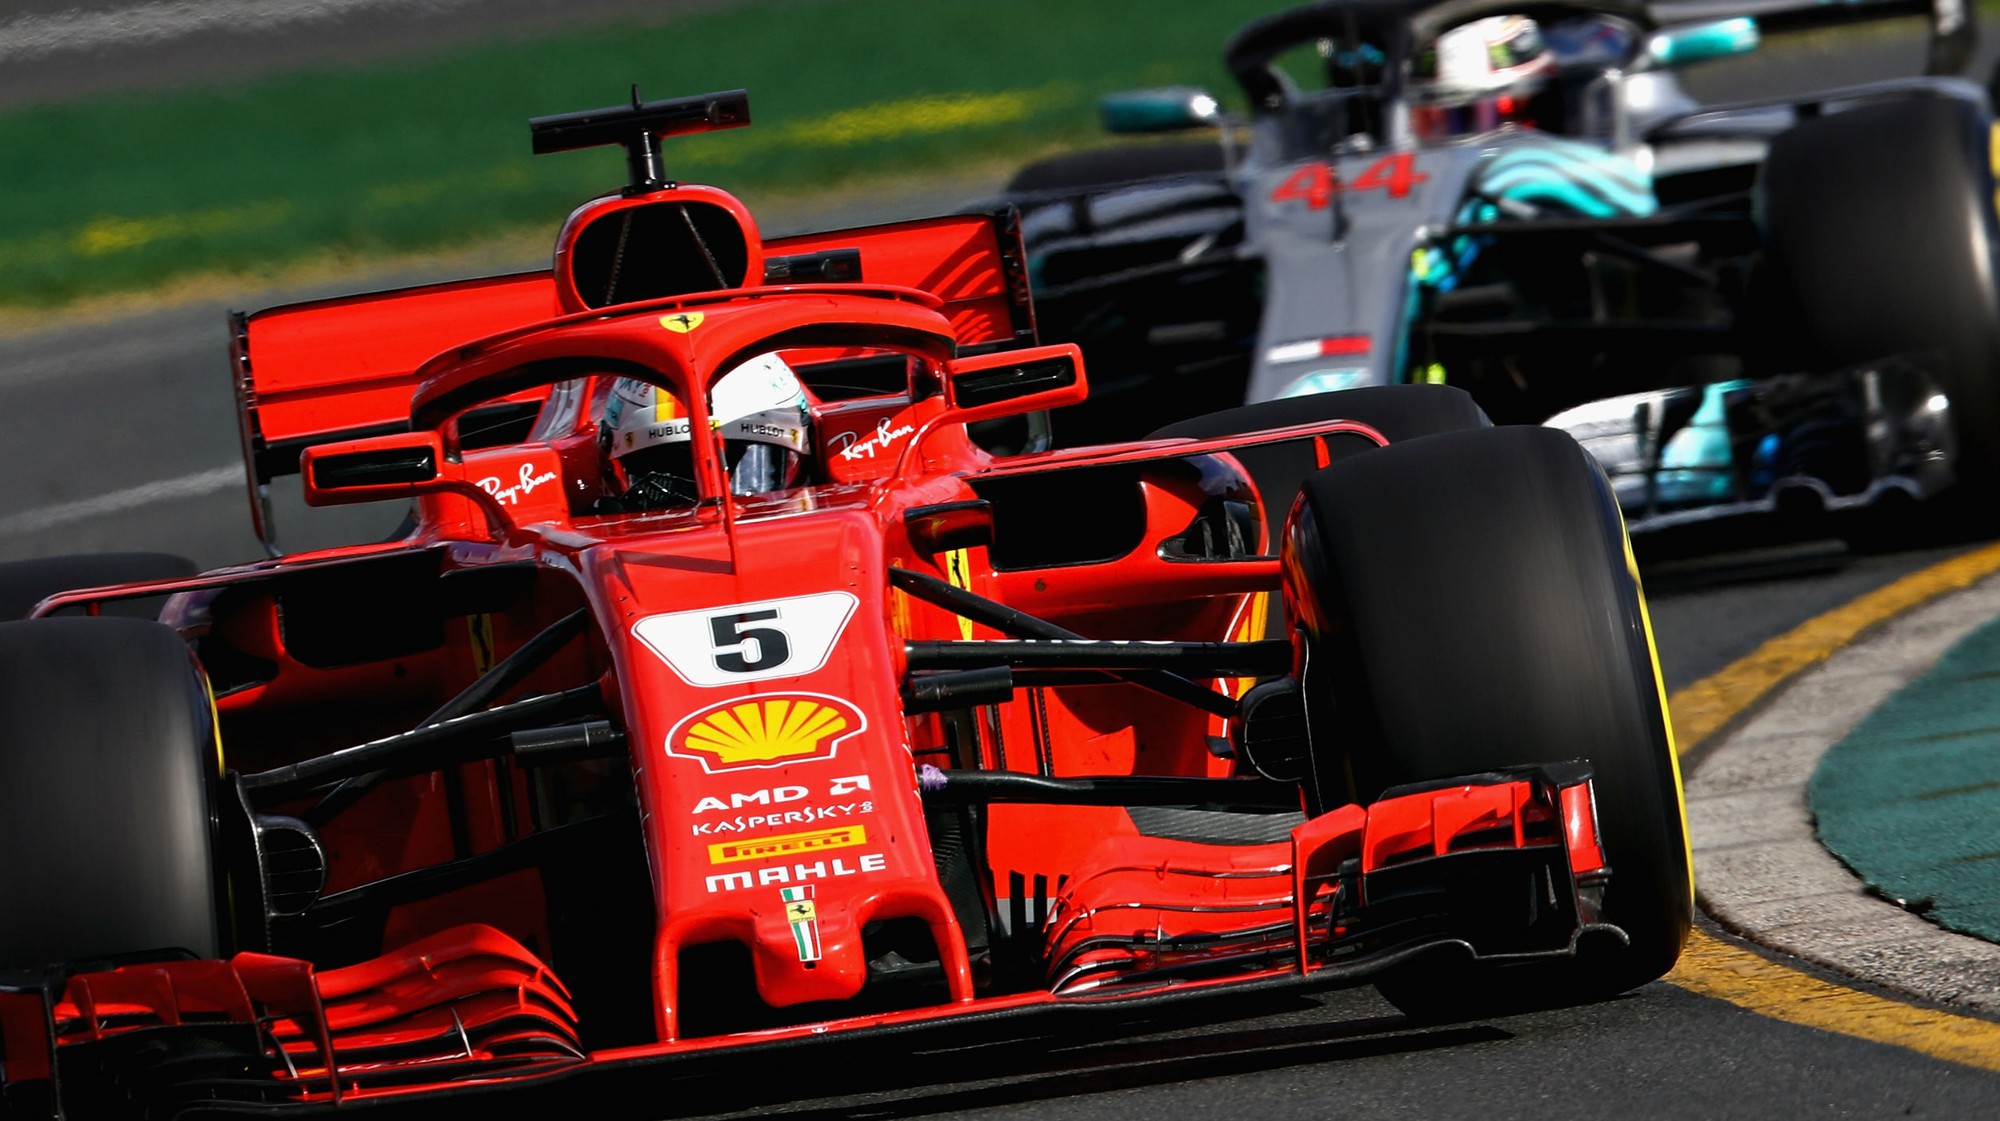 hình ảnh: Ferrari đang chọn lốp và có chiến thuật thay lốp trong chặng đua rất hợp lý